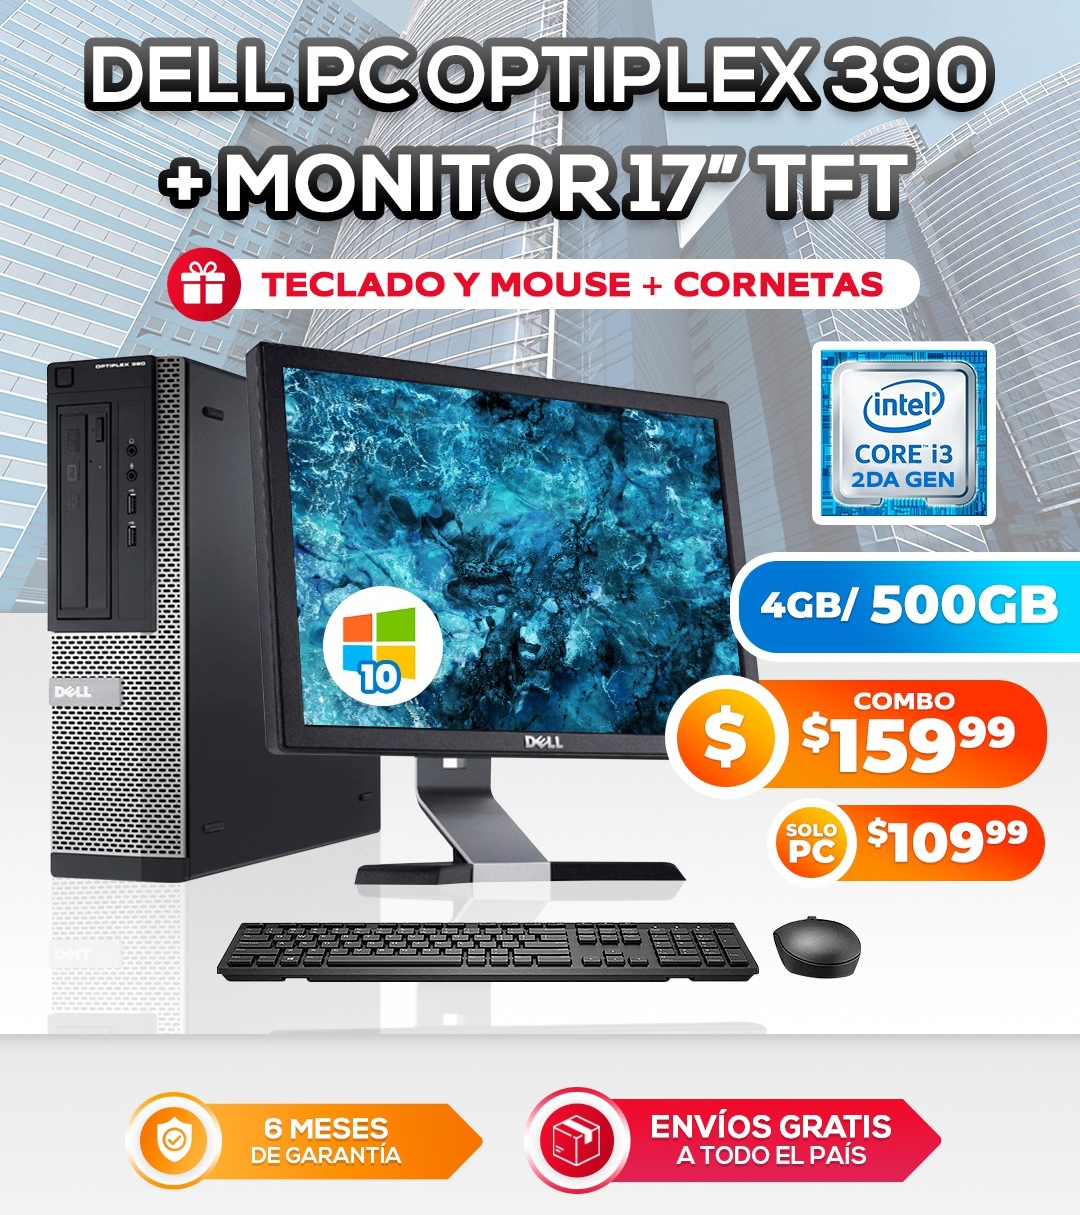 COMBO DELL – PC OPTIPLEX 390  – $160 / SOLO PC $110